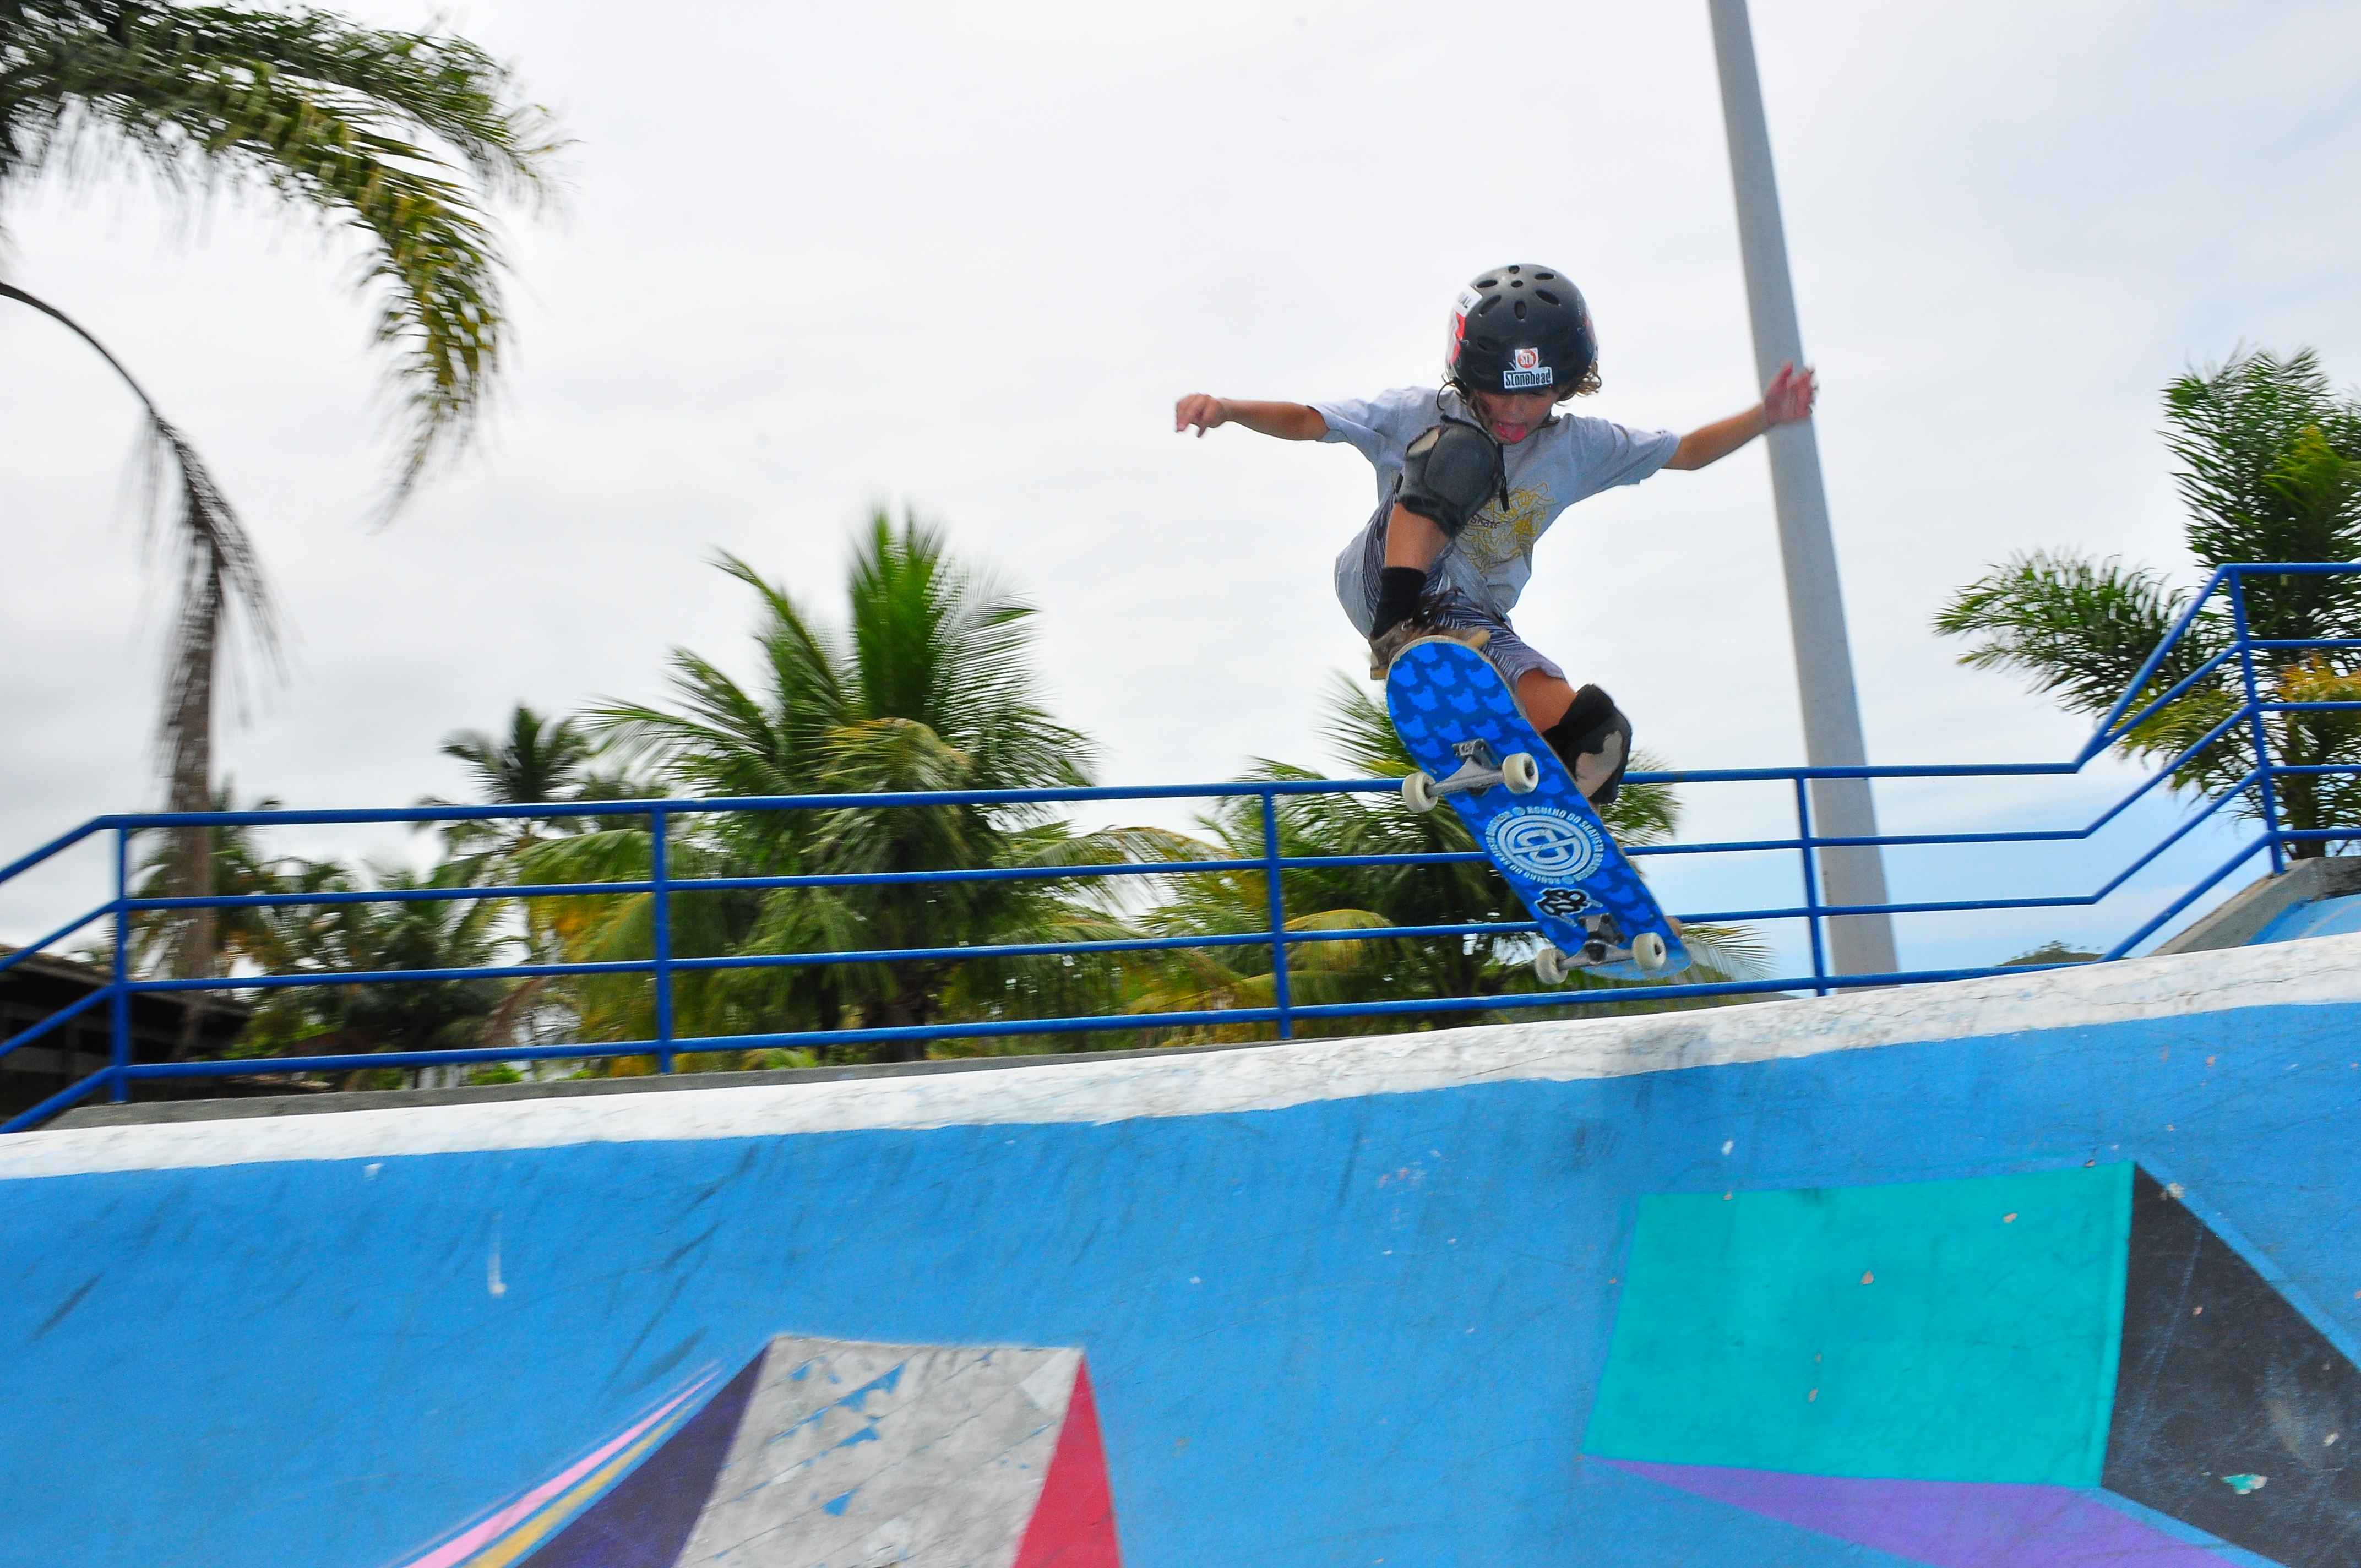 Representantes de Caraguatatuba dominam Torneio de Skate no projeto “Reviver de Verão” (Fotos: Cláudio Gomes/PMC)